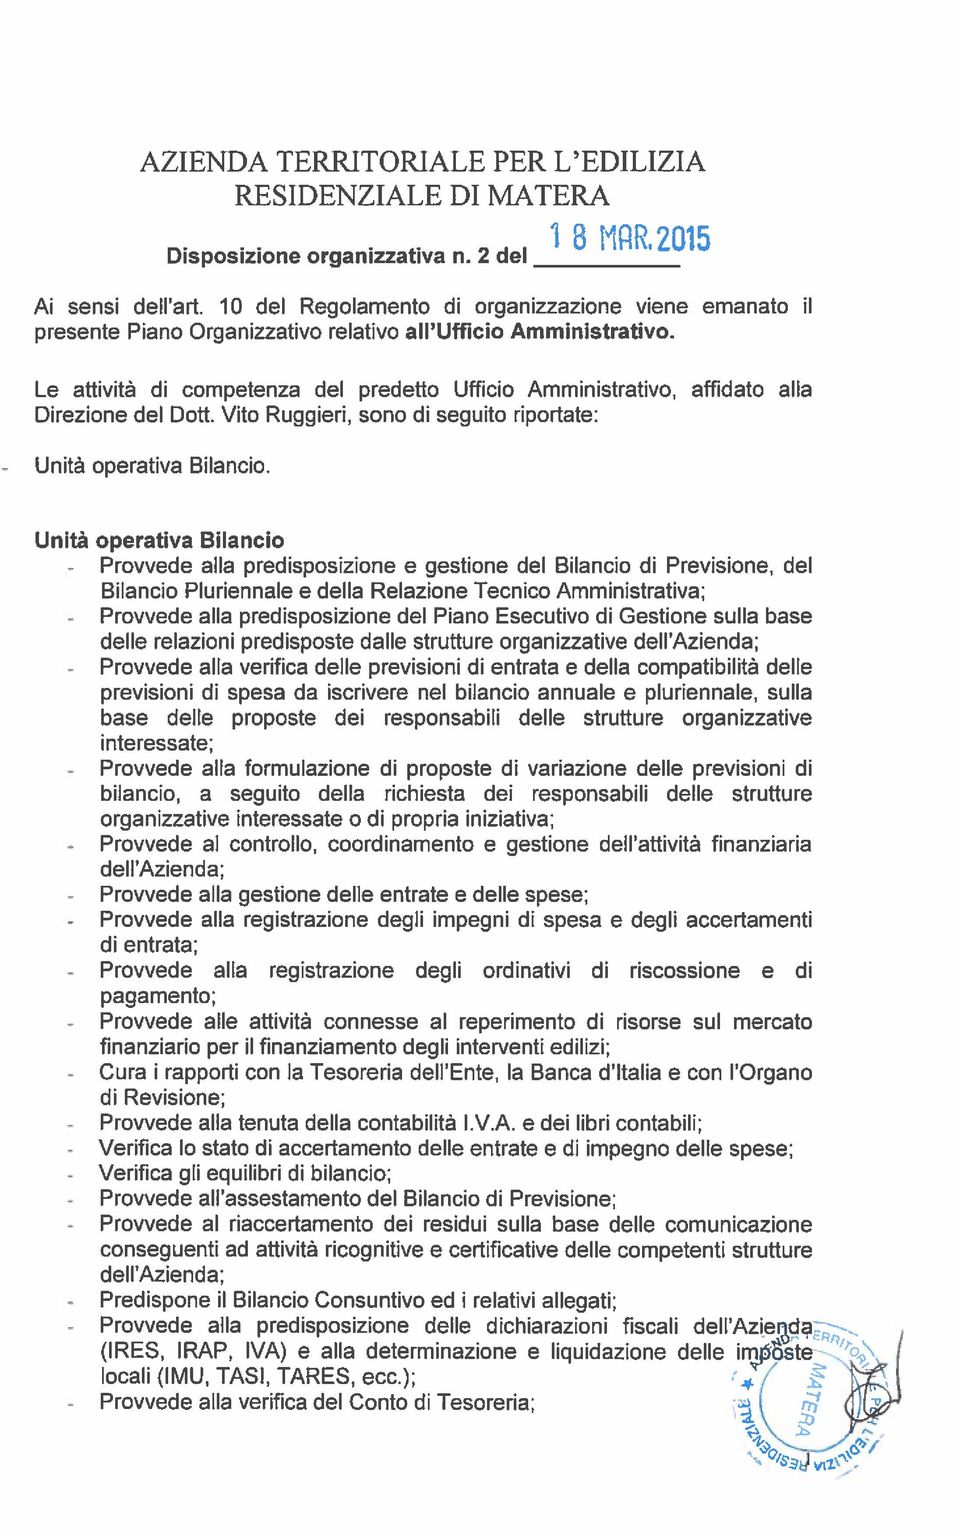 Le attività di competenza del predetto Ufficio Amministrativo, affidato alla Direzione del Dott. Vito Ruggieri, sono di seguita riportate: Unità operativa Bilancio. i 3 Kfl1.